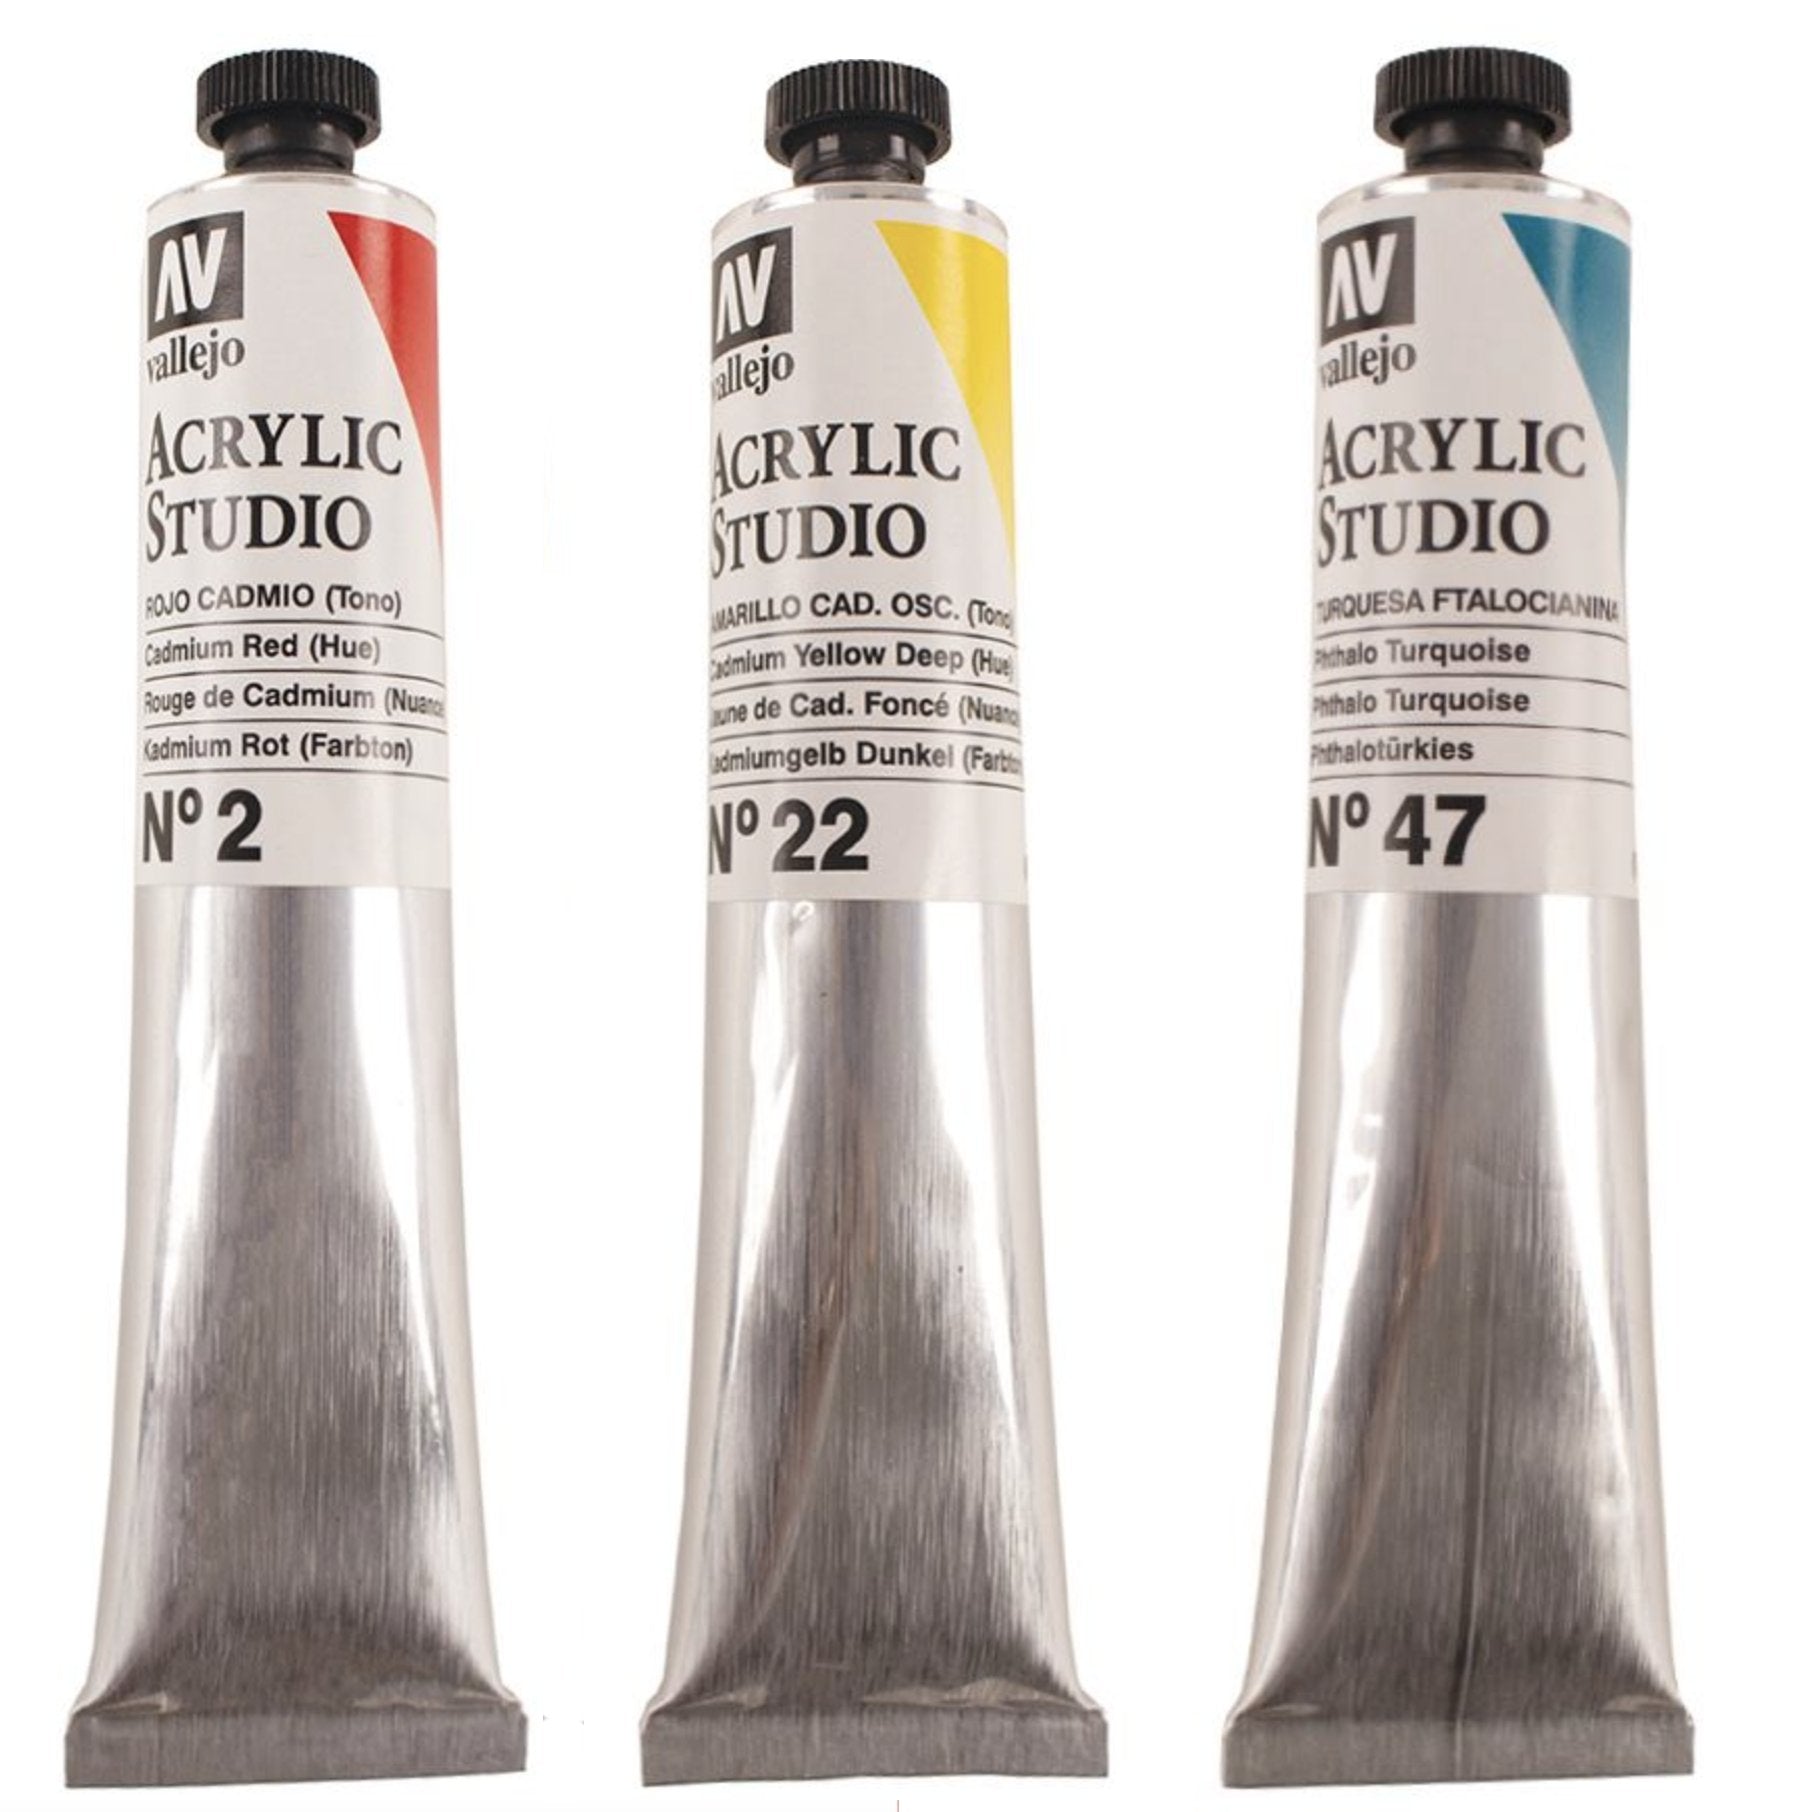 Vallejo Paint 60ml Bottle Basic Opaque Premium Paint Set (5 Colors)